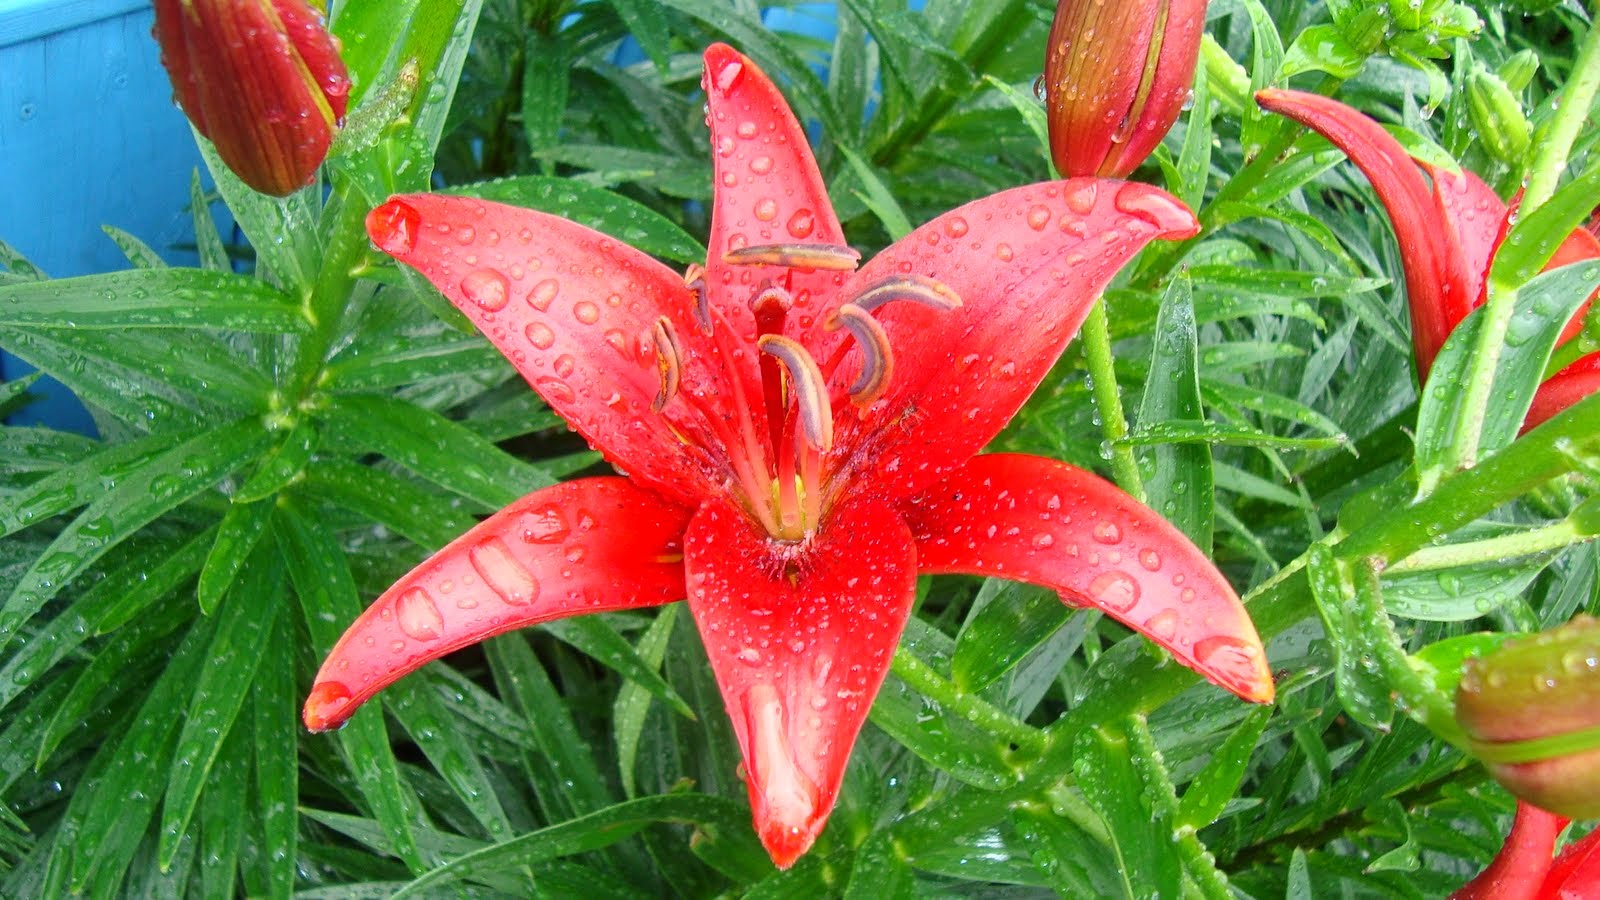 Tuyển tập hình ảnh hoa loa kèn đỏ đẹp nhất - [Kích thước hình ảnh: 1600x900 px]